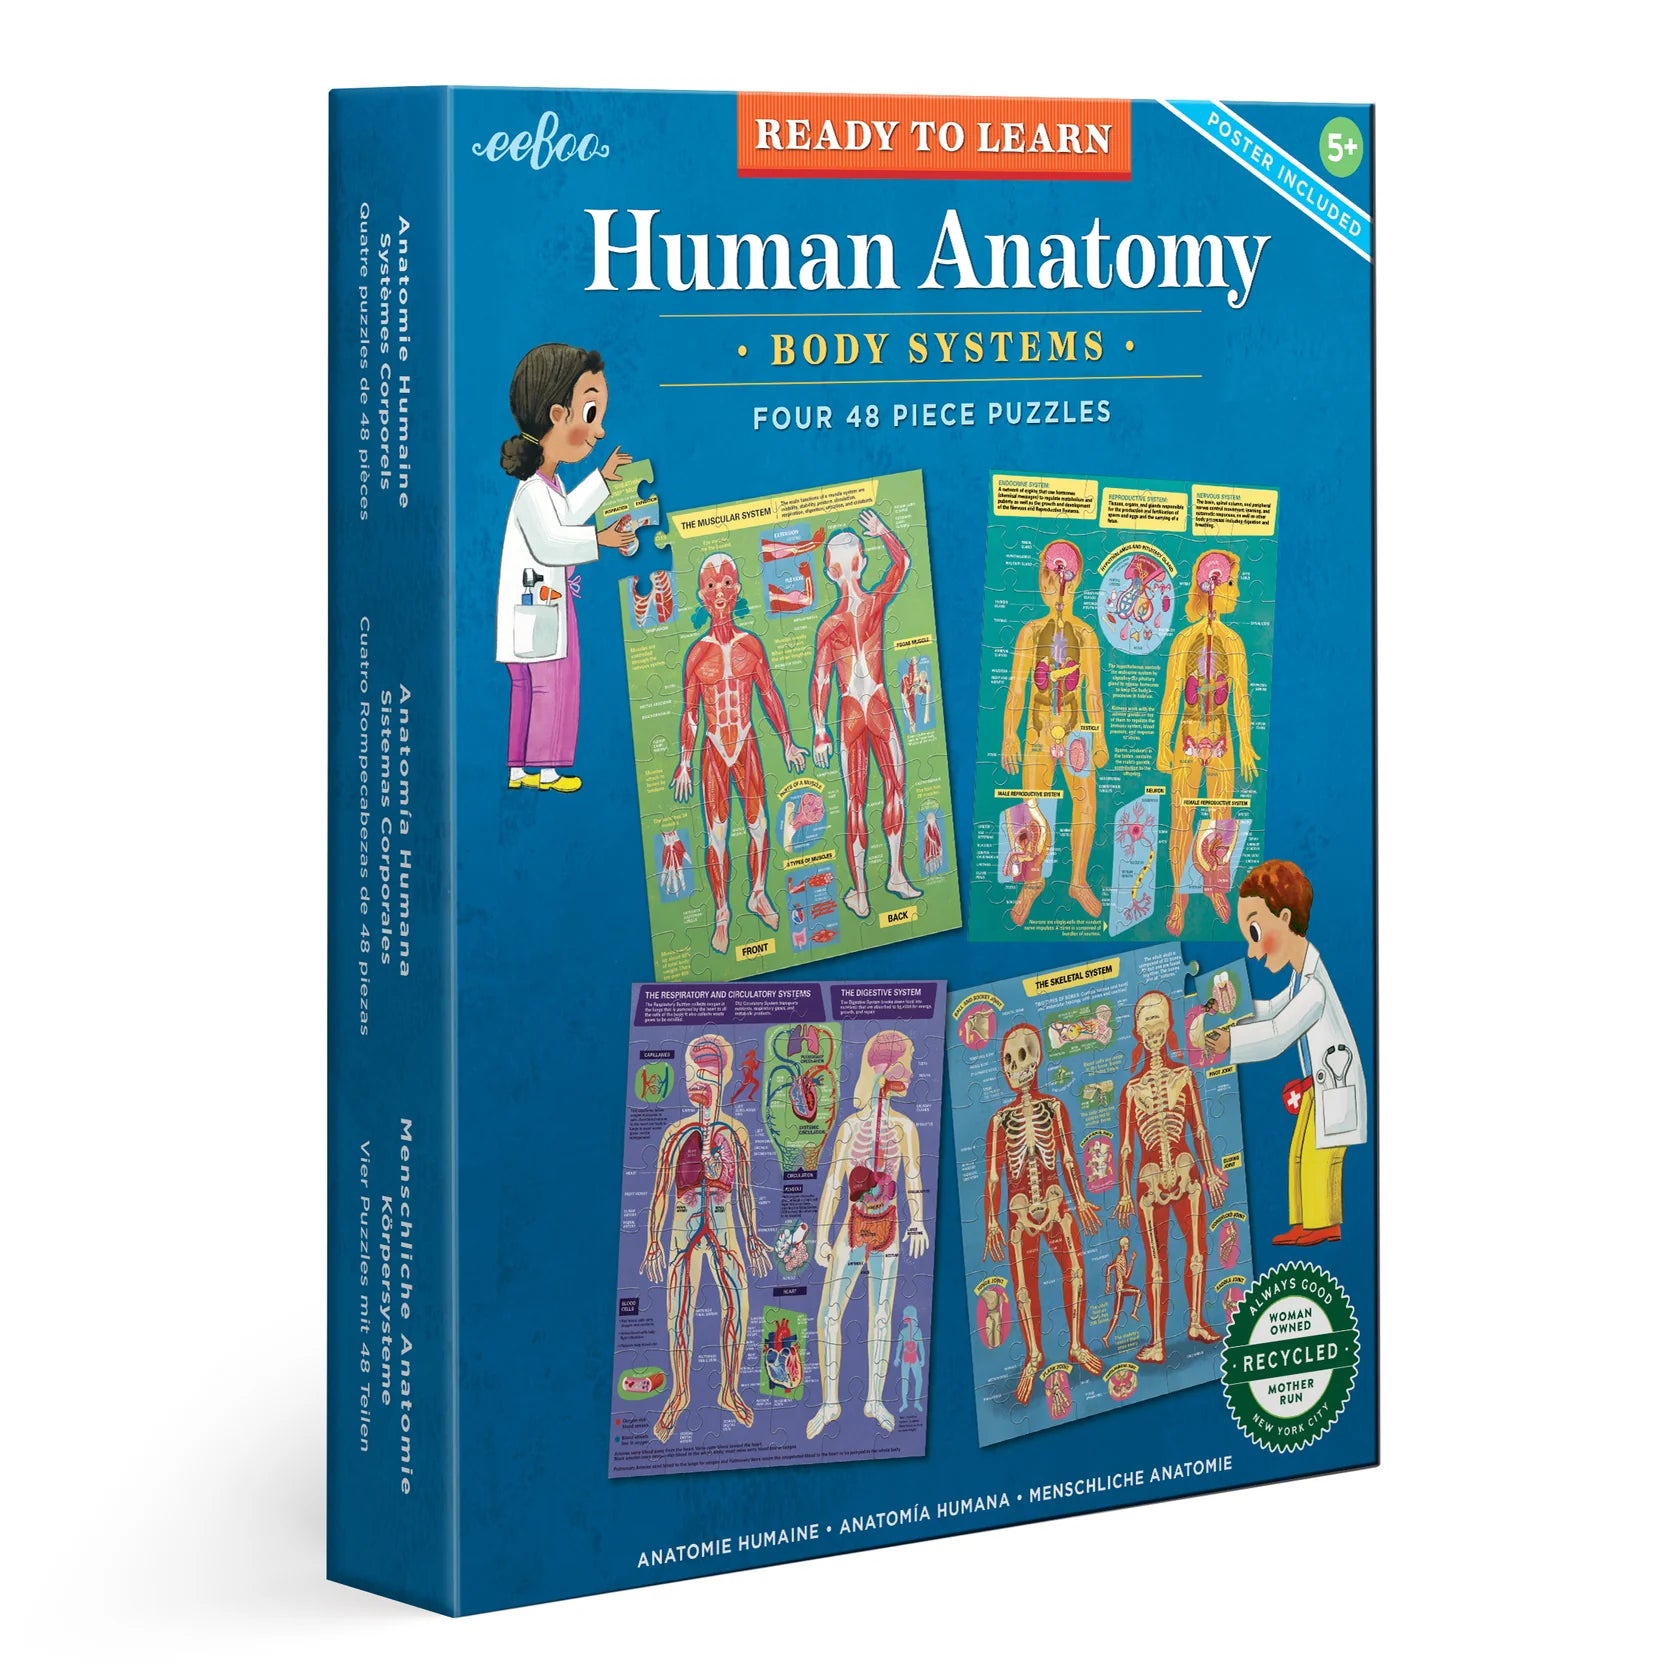 Human Anatomy Puzzle by Eeboo